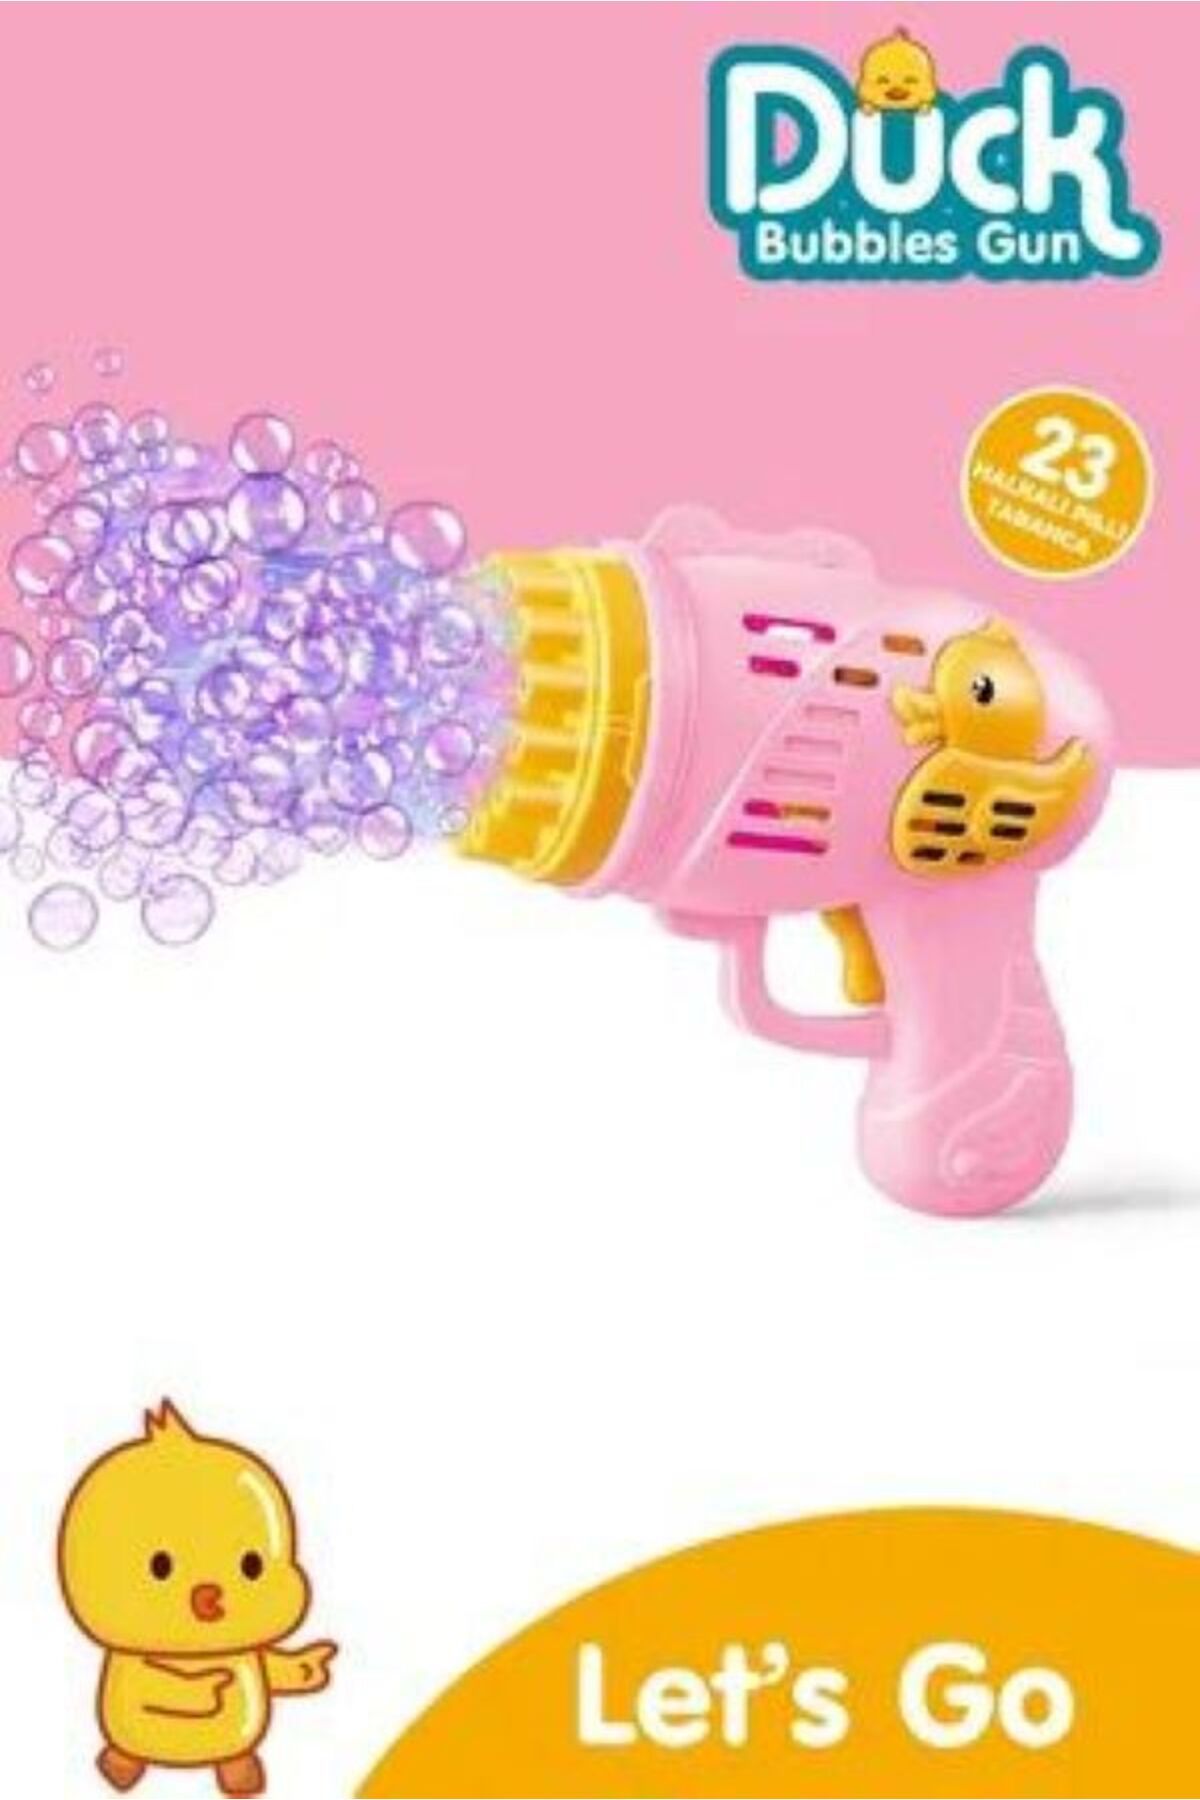 LONDONstore Duck Çok Delikli Pilli Köpük Atan Tabanca Oyuncağı 23 Delikli Bubble Gun